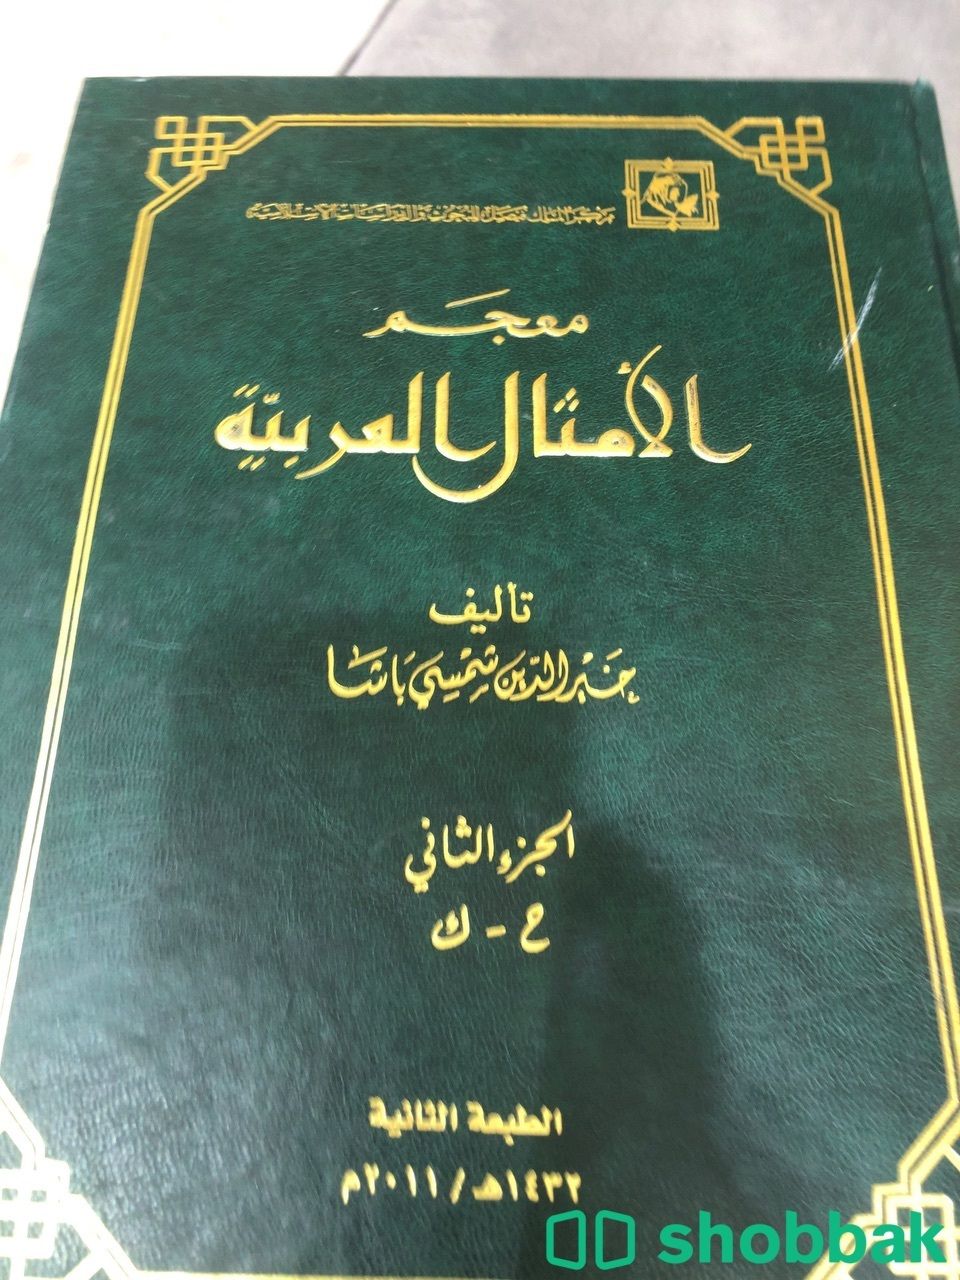 ‏ كتاب معجم الامثال العربية الجزاء الاول والثاني Shobbak Saudi Arabia